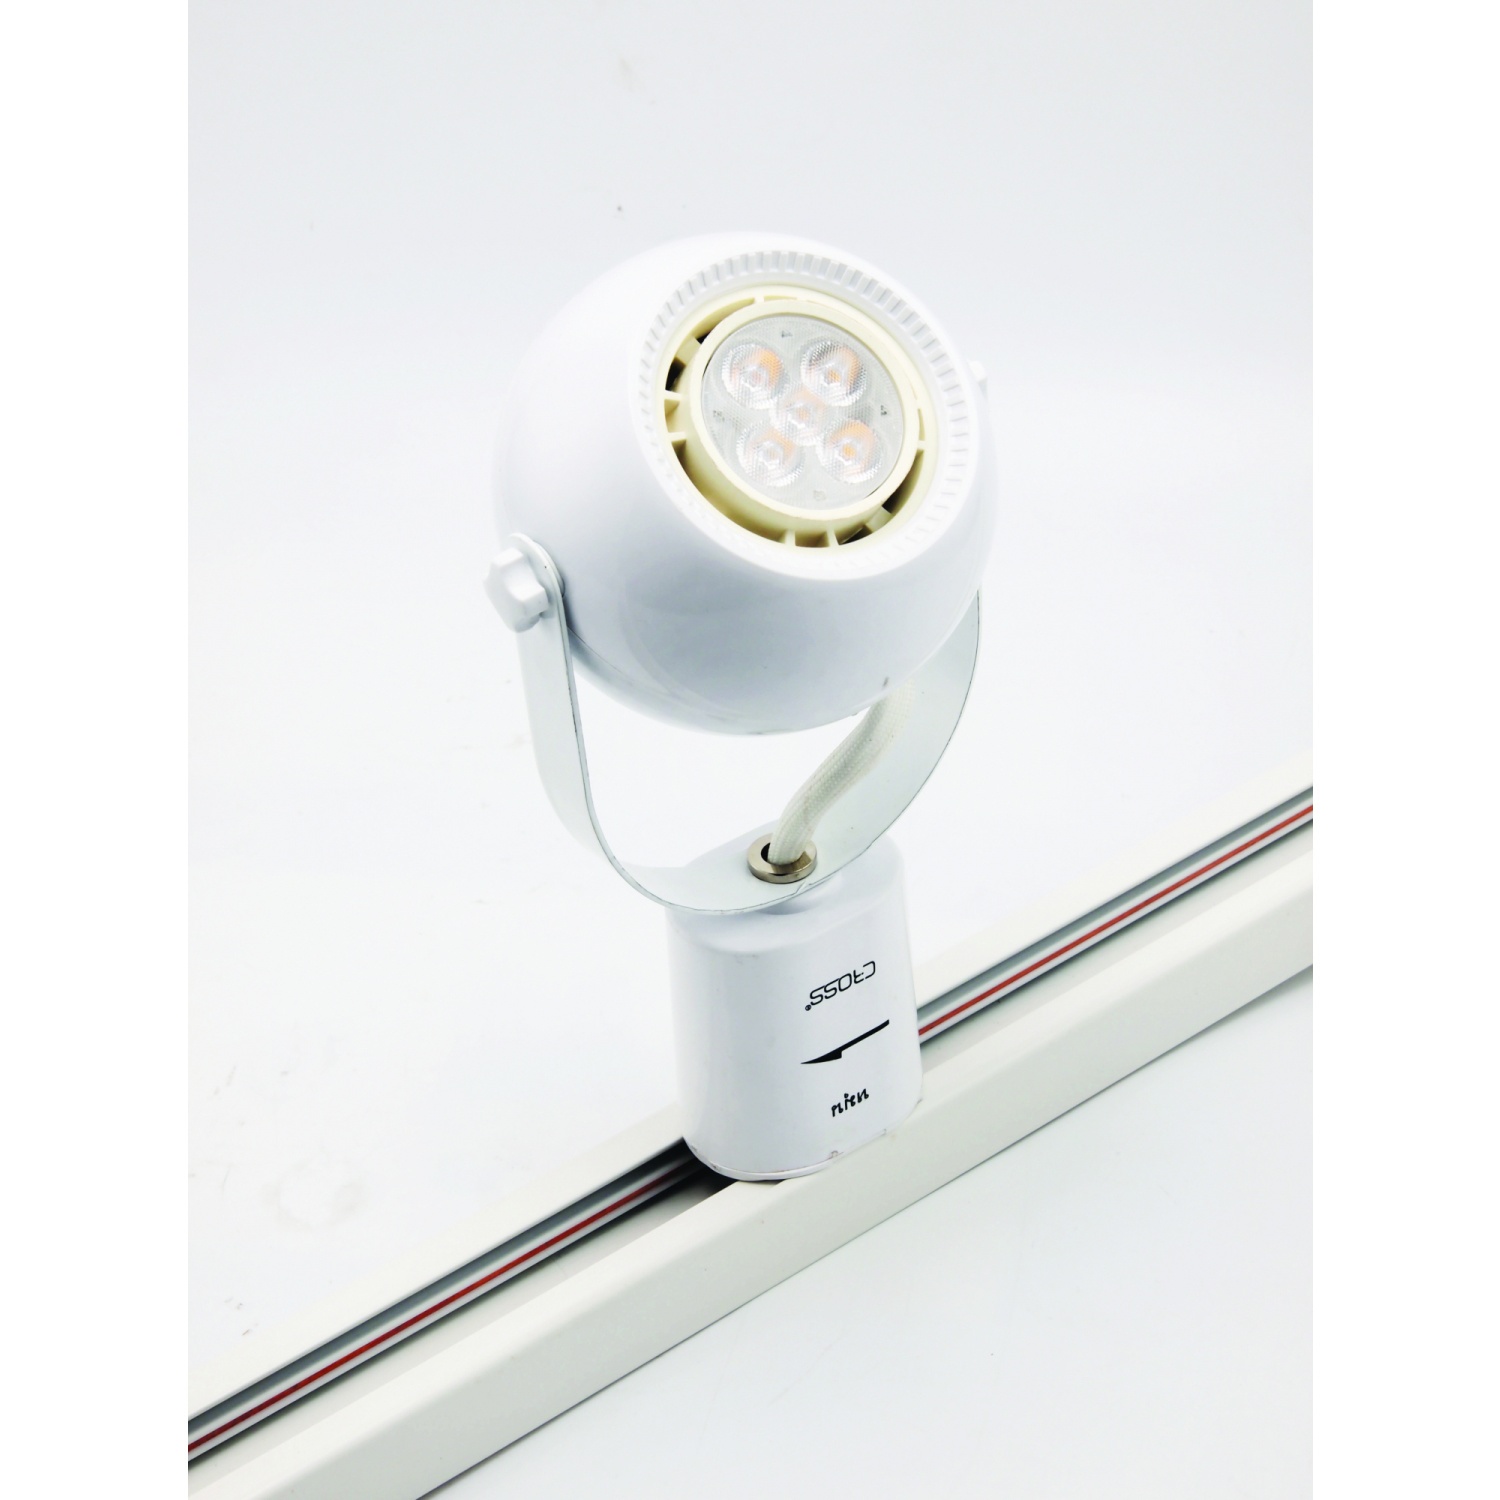 โคมTracklight LED สีขาวทรงกลม(TL04)ฐานกระบอก 5W. Warm